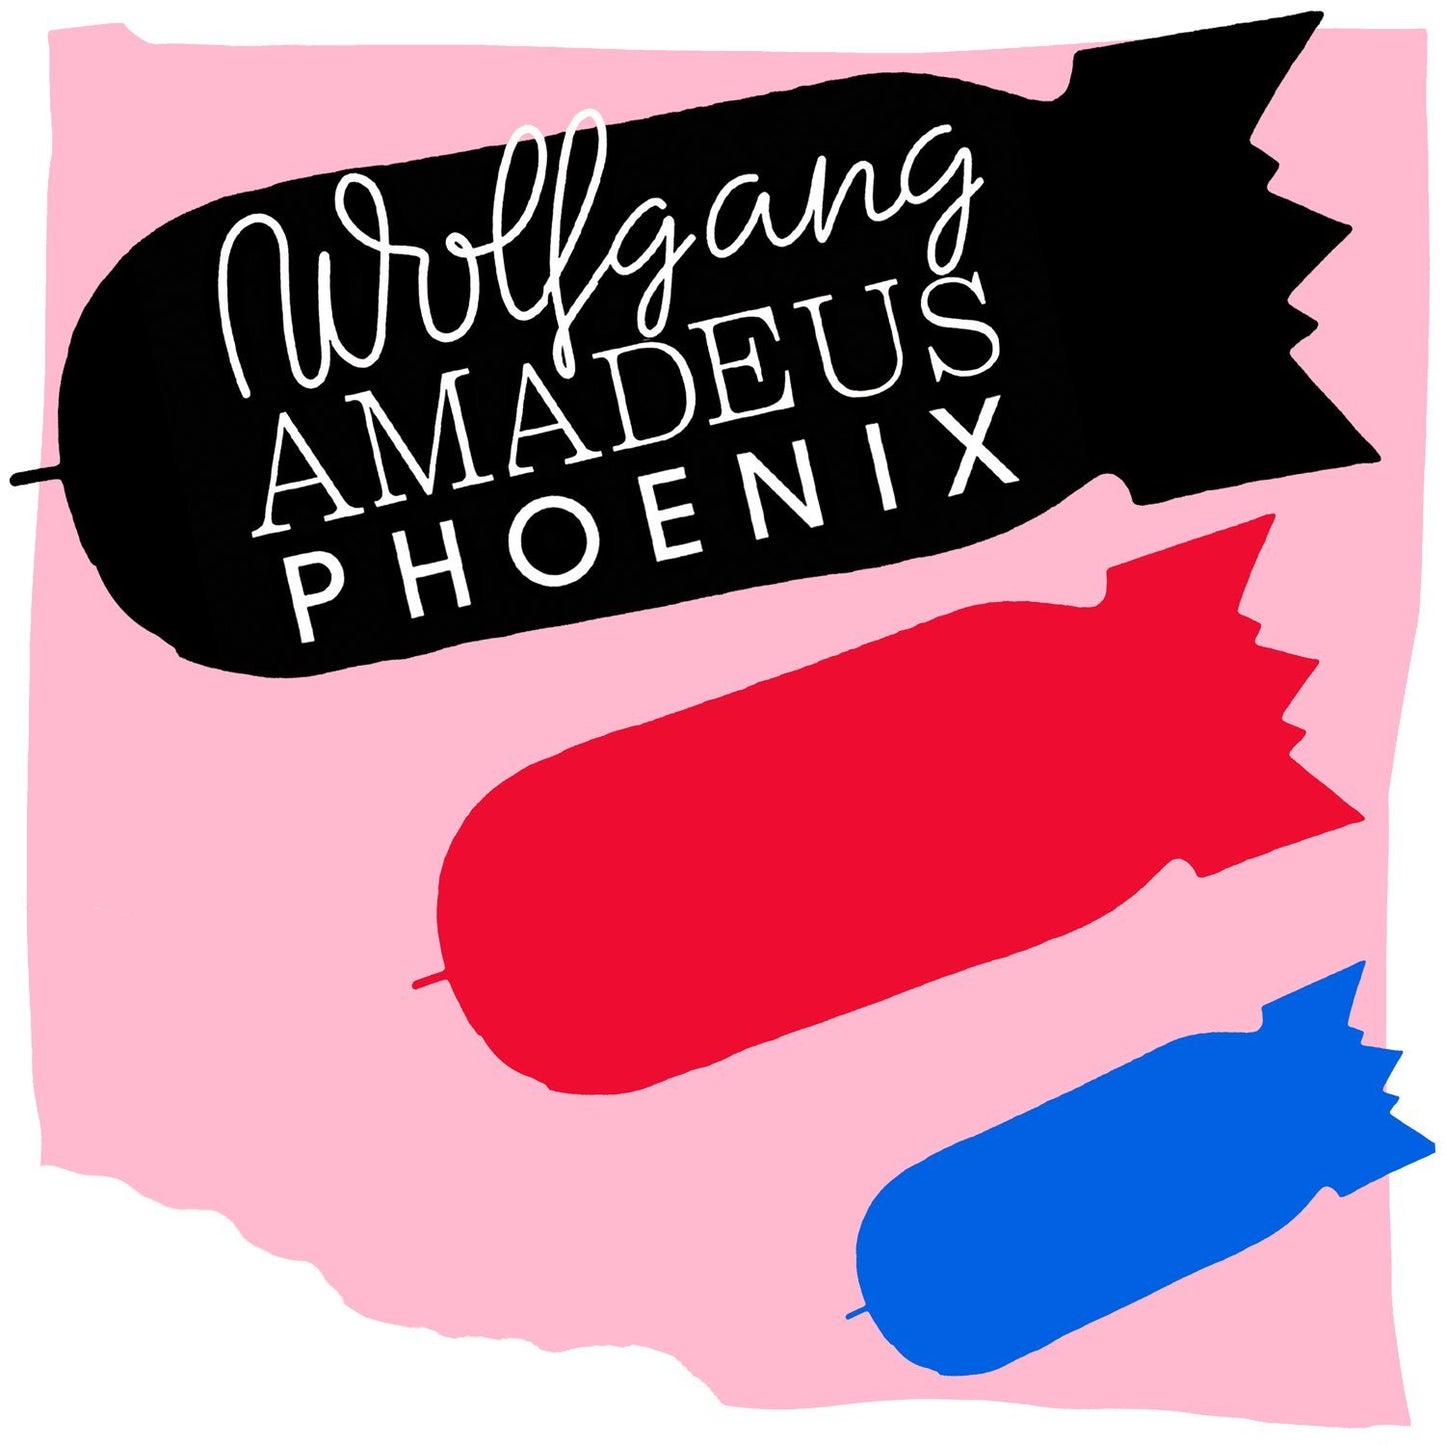 Phoenix - Wolfgang Aadeus